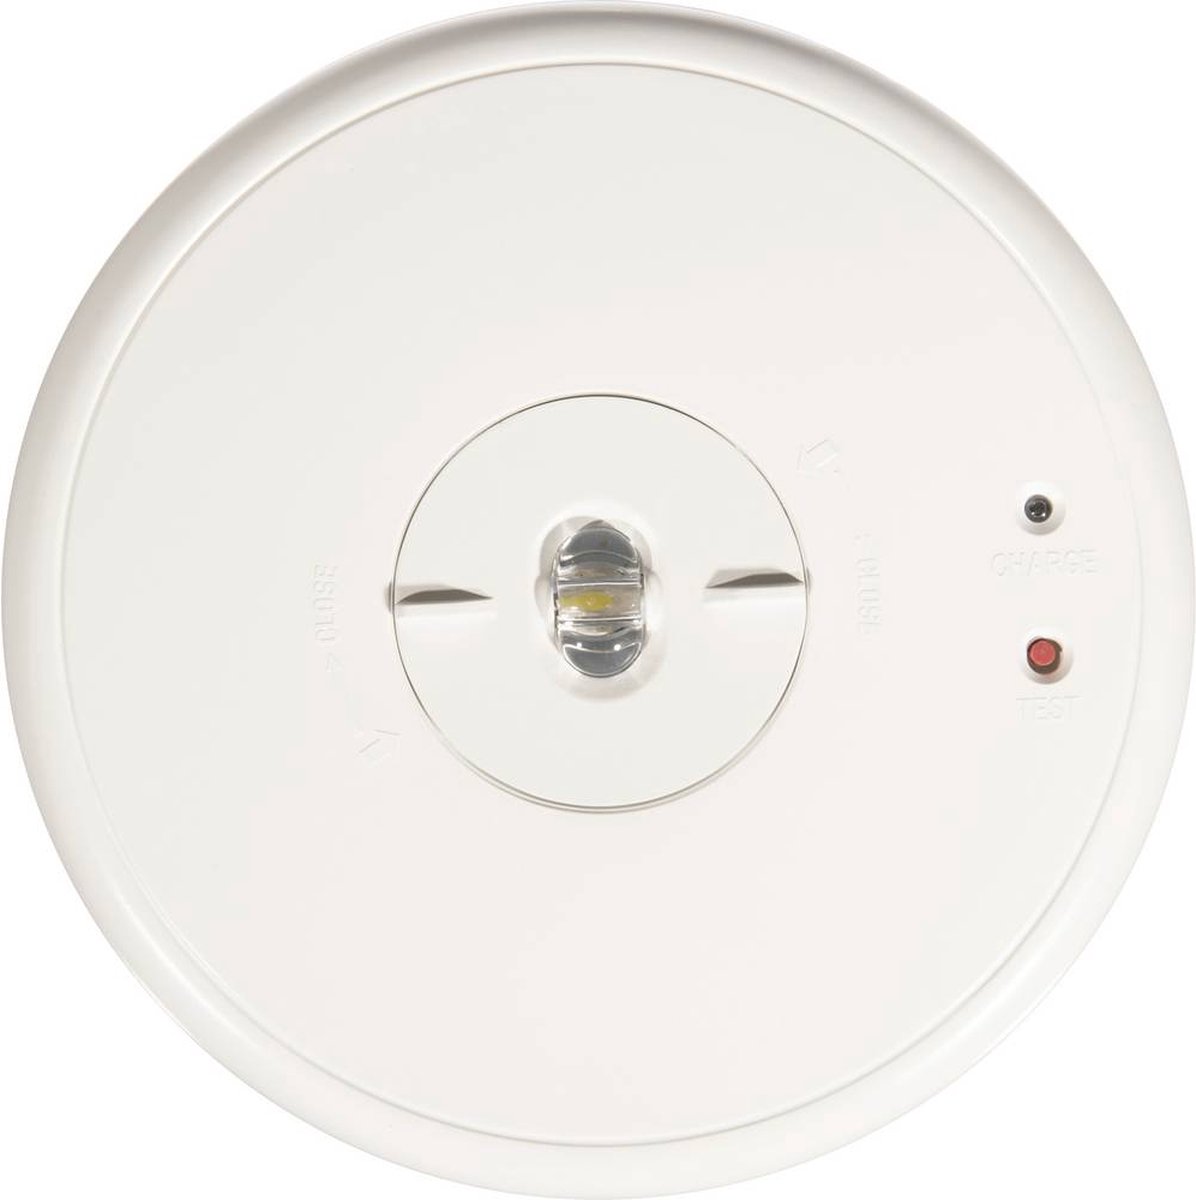 Lampe secours et sécurité LED V-LUX STANDARD ECO